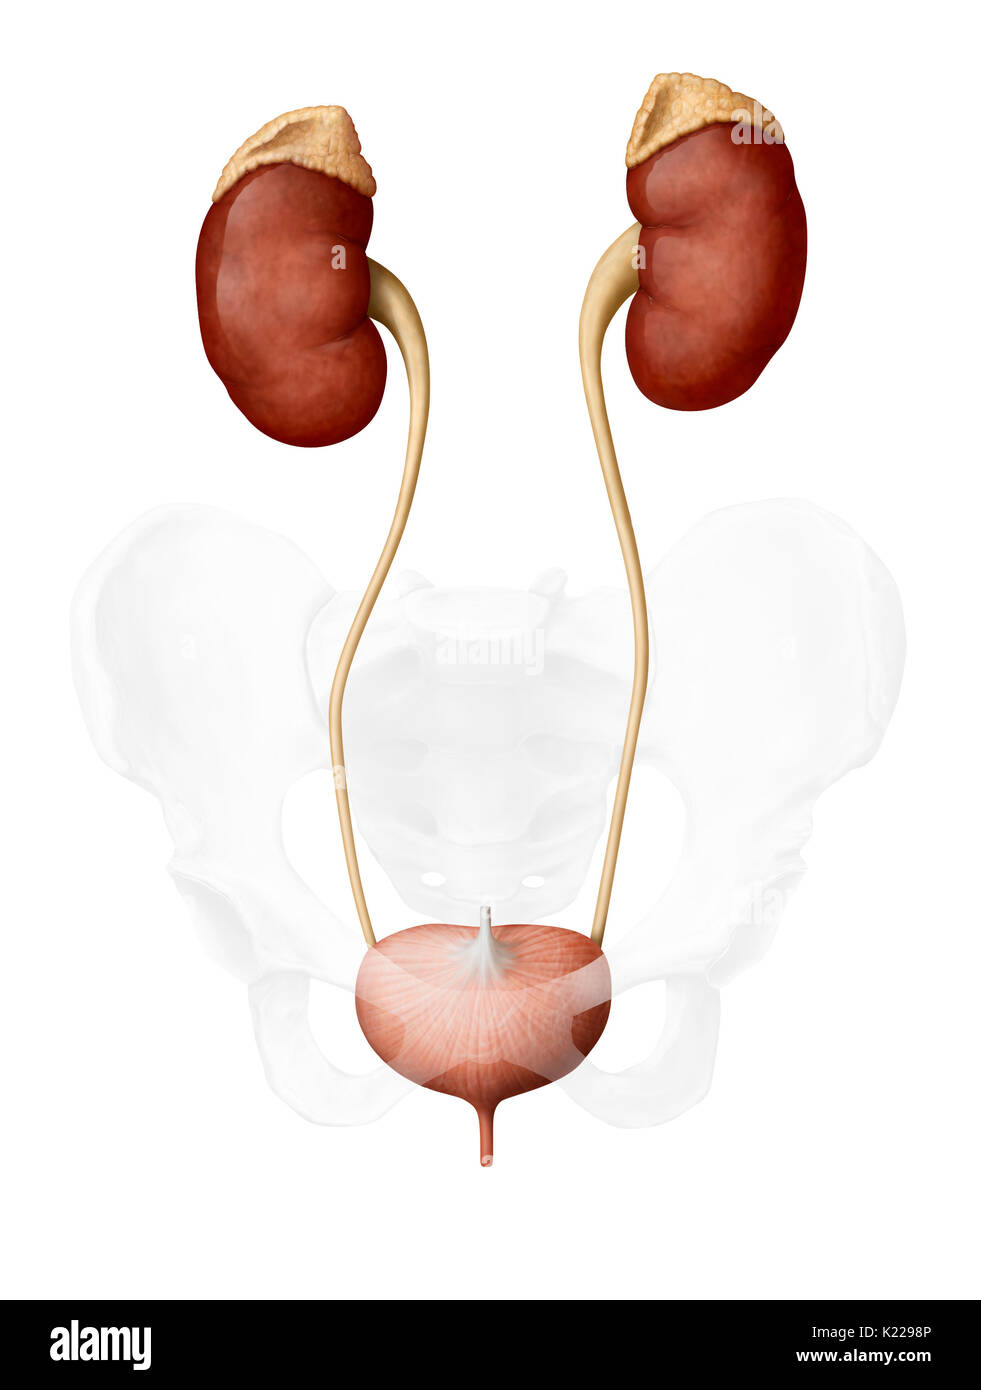 Dieses Bild zeigt die Harnwege von einer Frau, die die Nebenniere beinhaltet, der Nieren, der Harnleiter, der Harnblase und der Harnröhre. Stockfoto